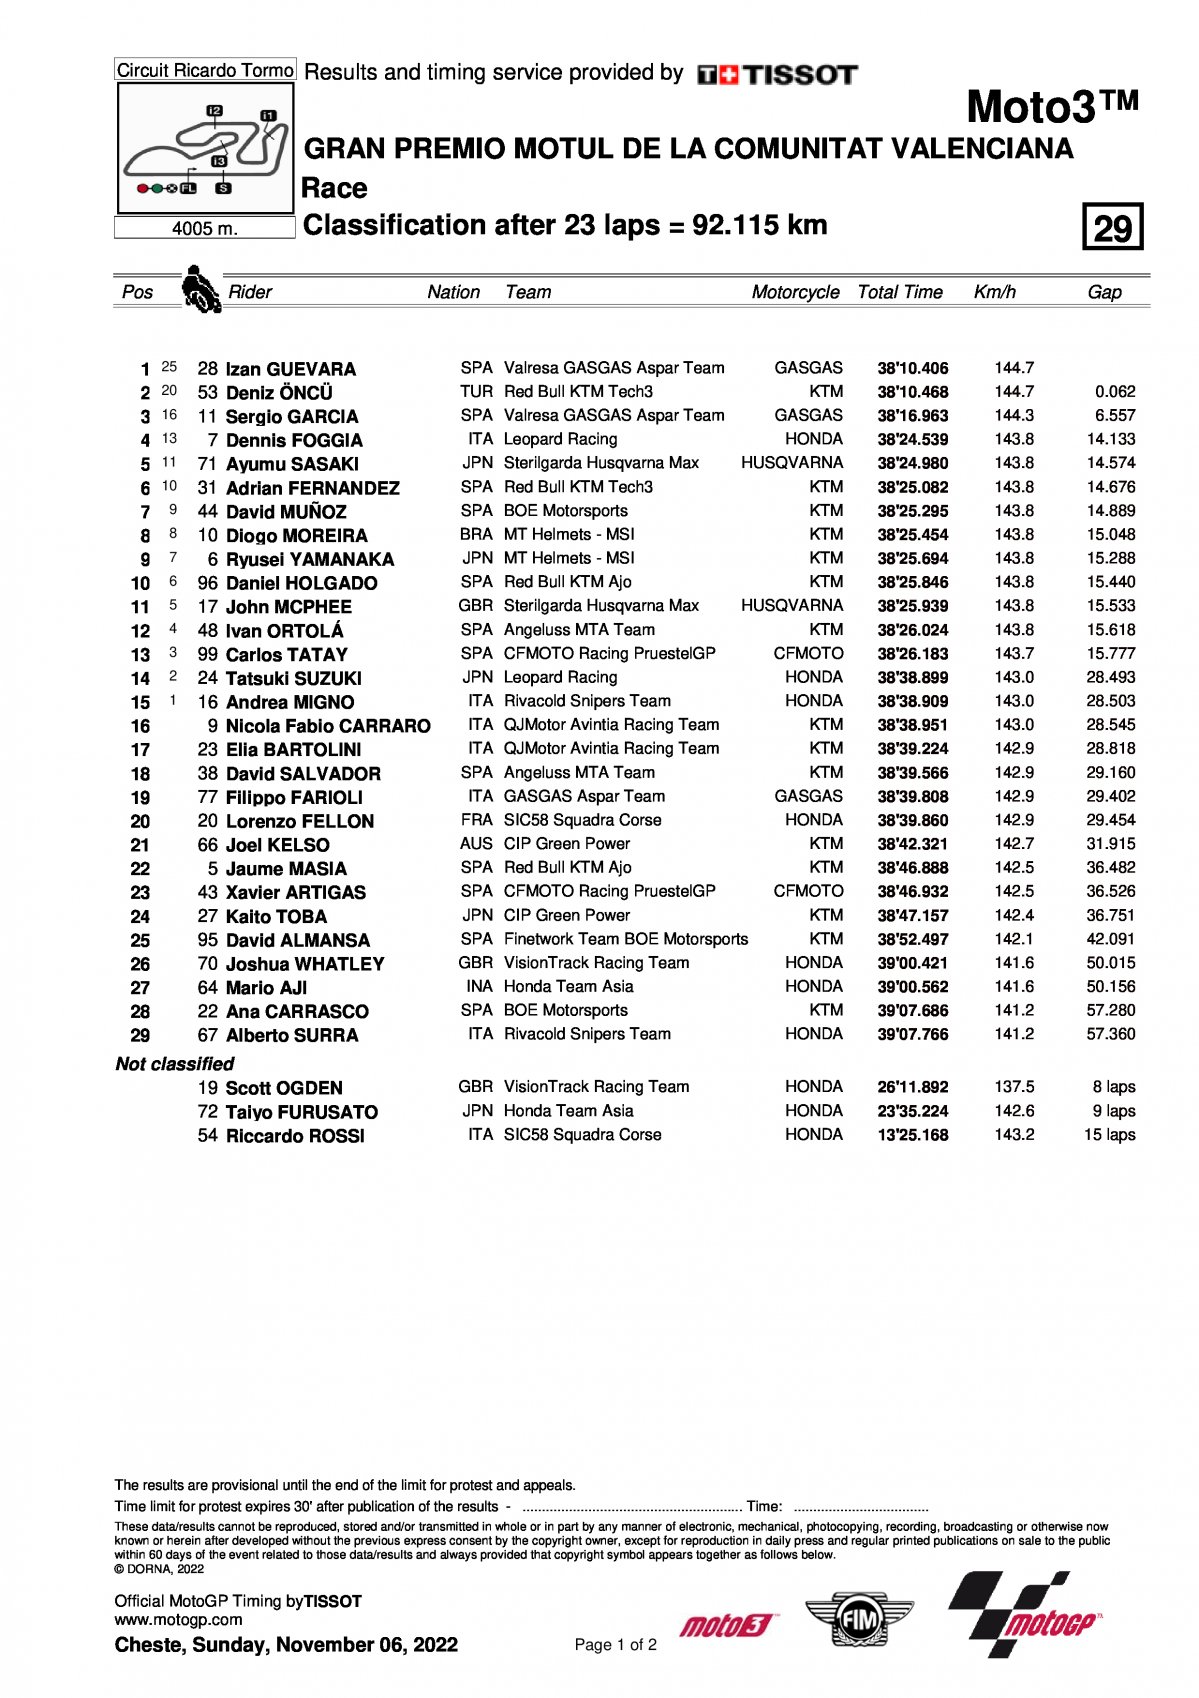 Результаты Гран-При Валенсии Moto3 (6/11/2022)